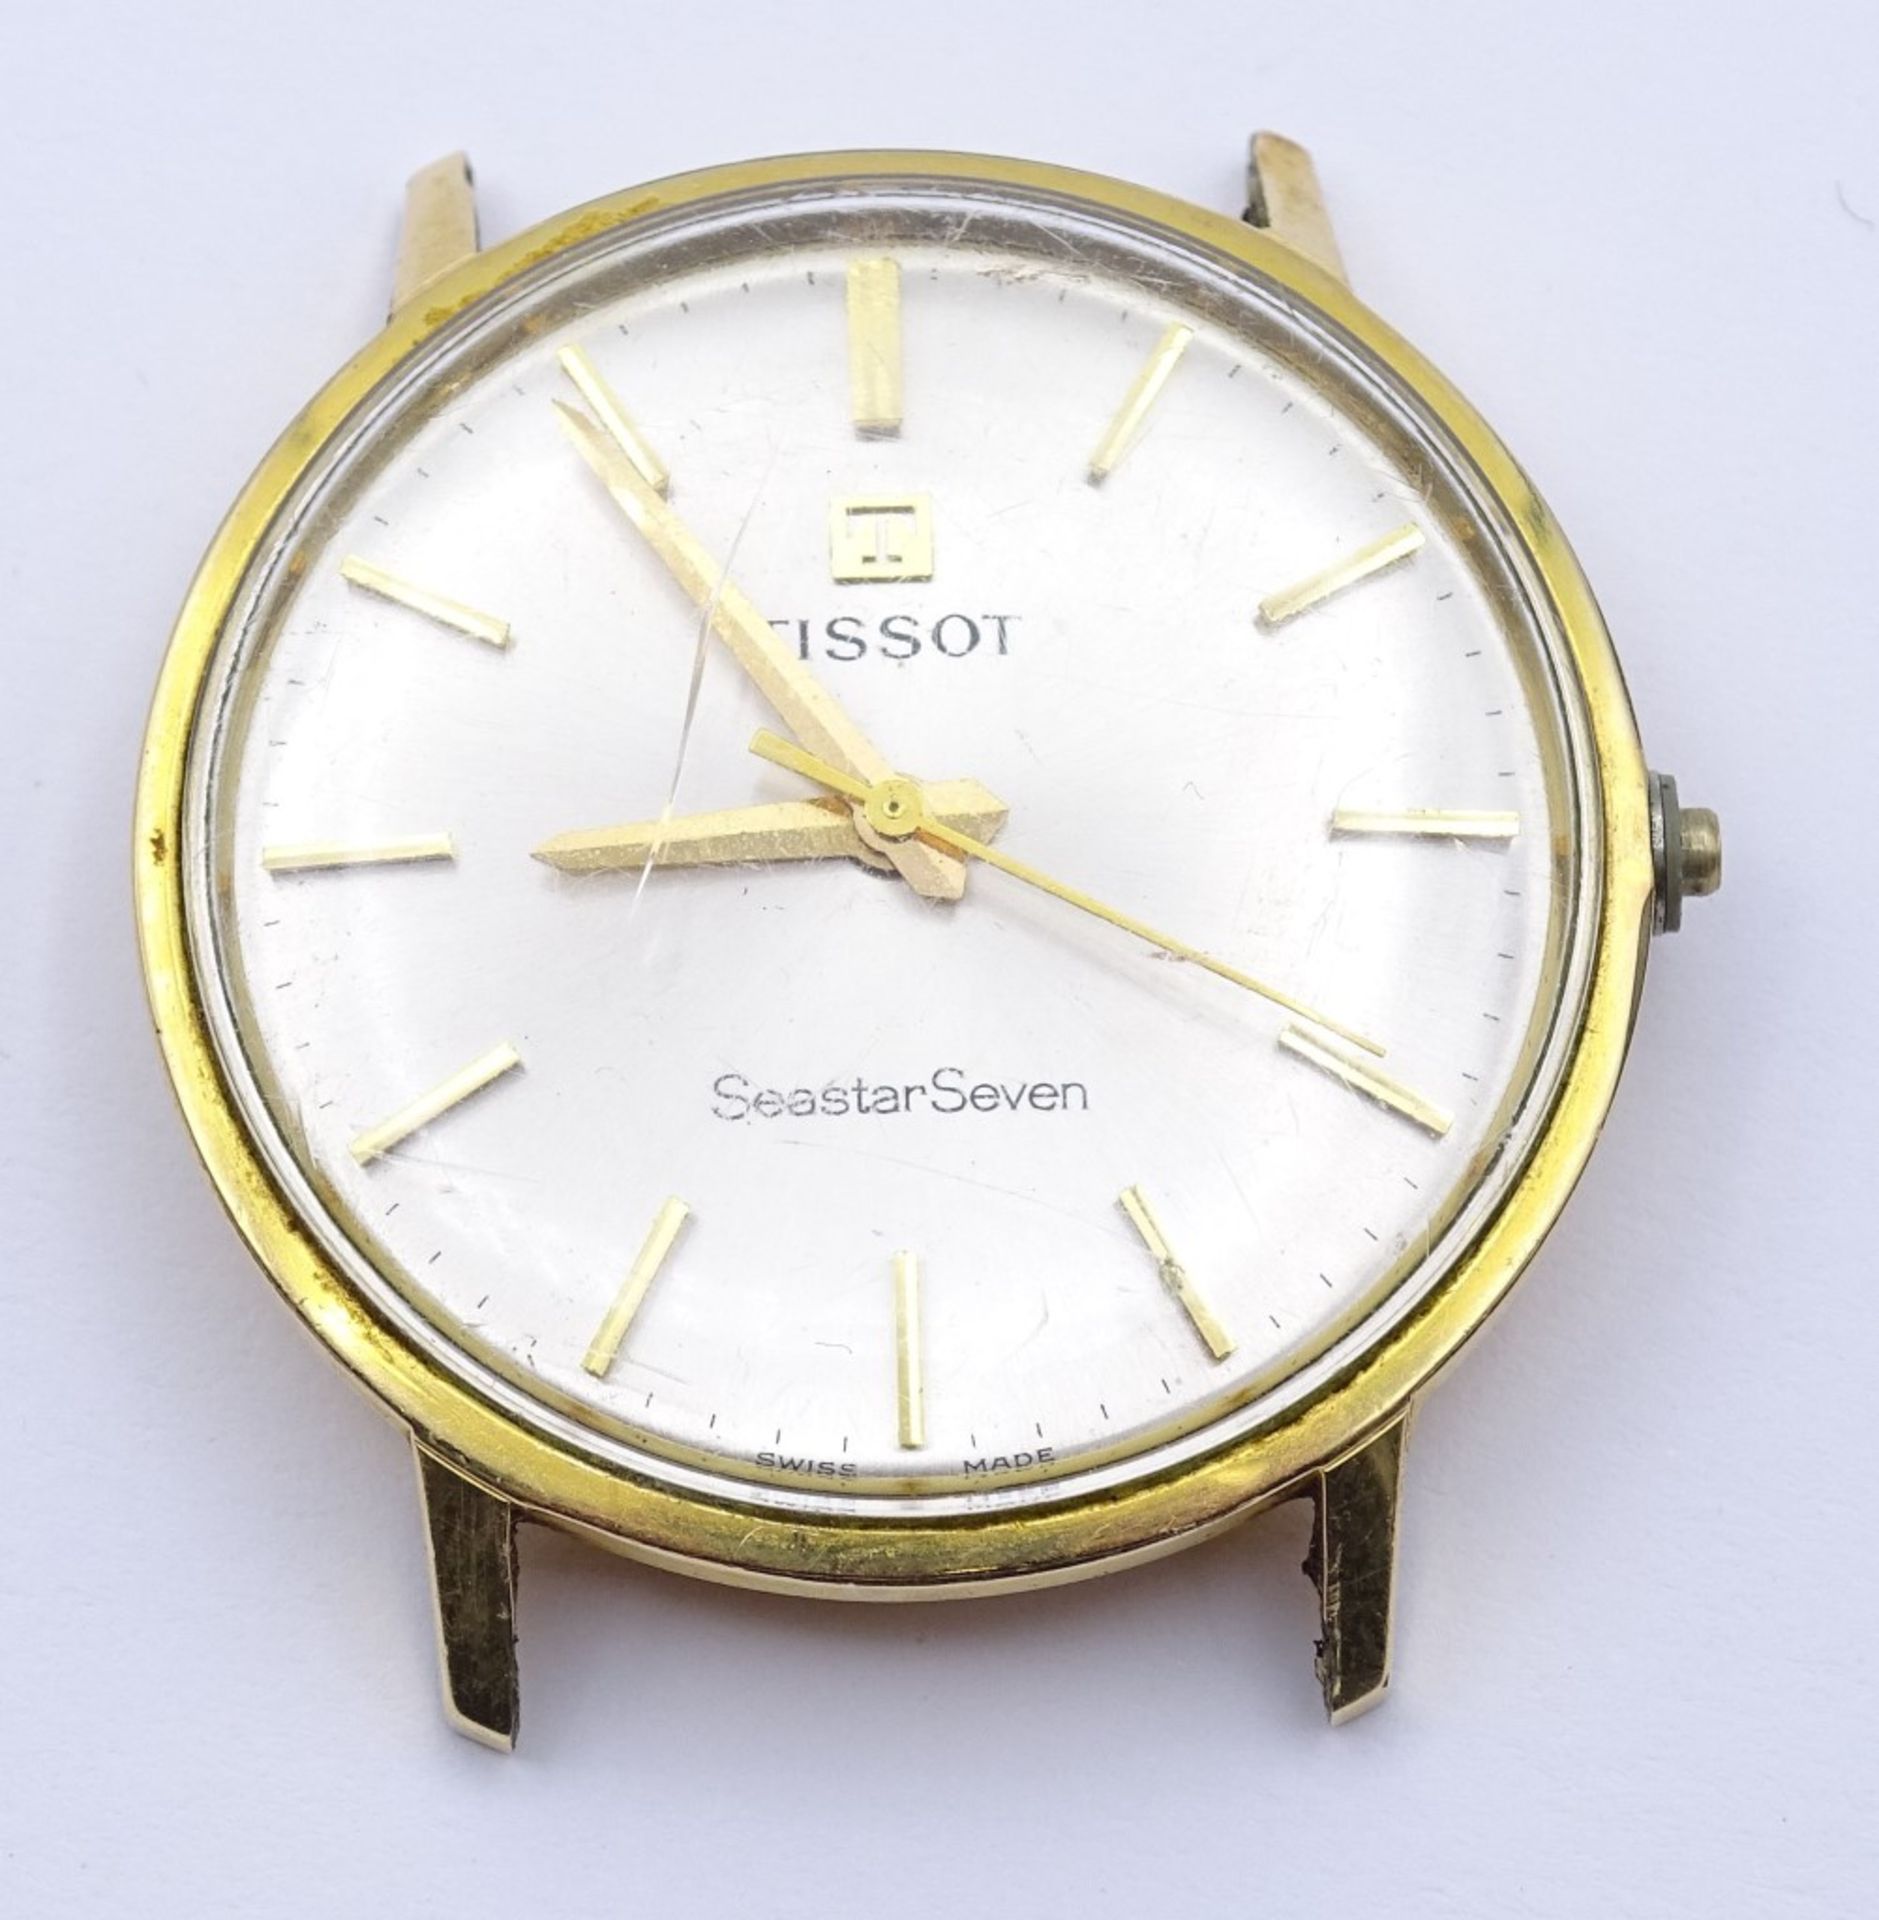 Armbanduhr "Tissot-SeastarSeven",mechanisch,Werk läuft,vergoldet,d-33,8mm,Krone fehl - Bild 2 aus 3